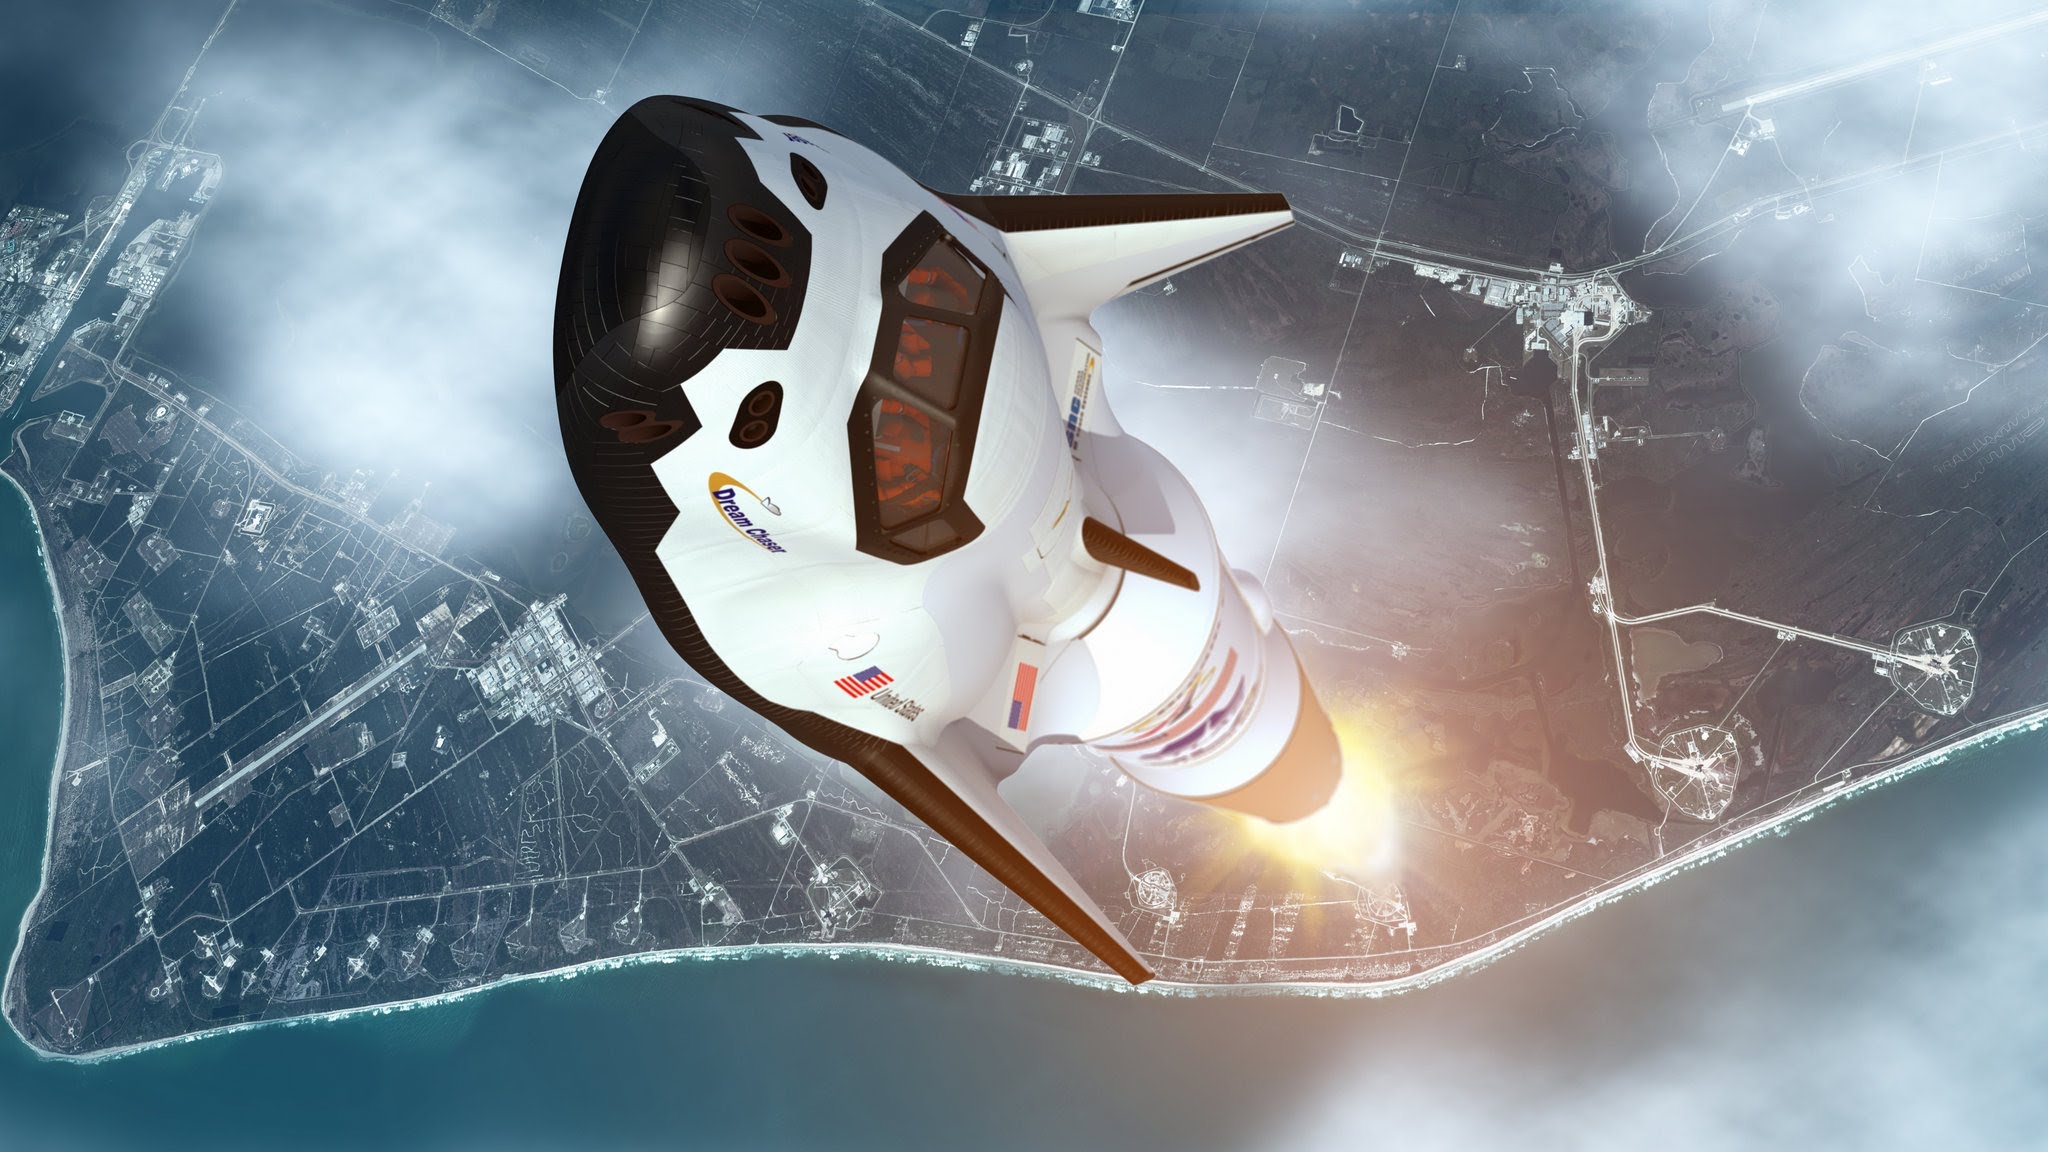 Космическое такси от NASA: в космическом агентстве разрабатывают новый проект летательного аппарата на основе Dream Chaser